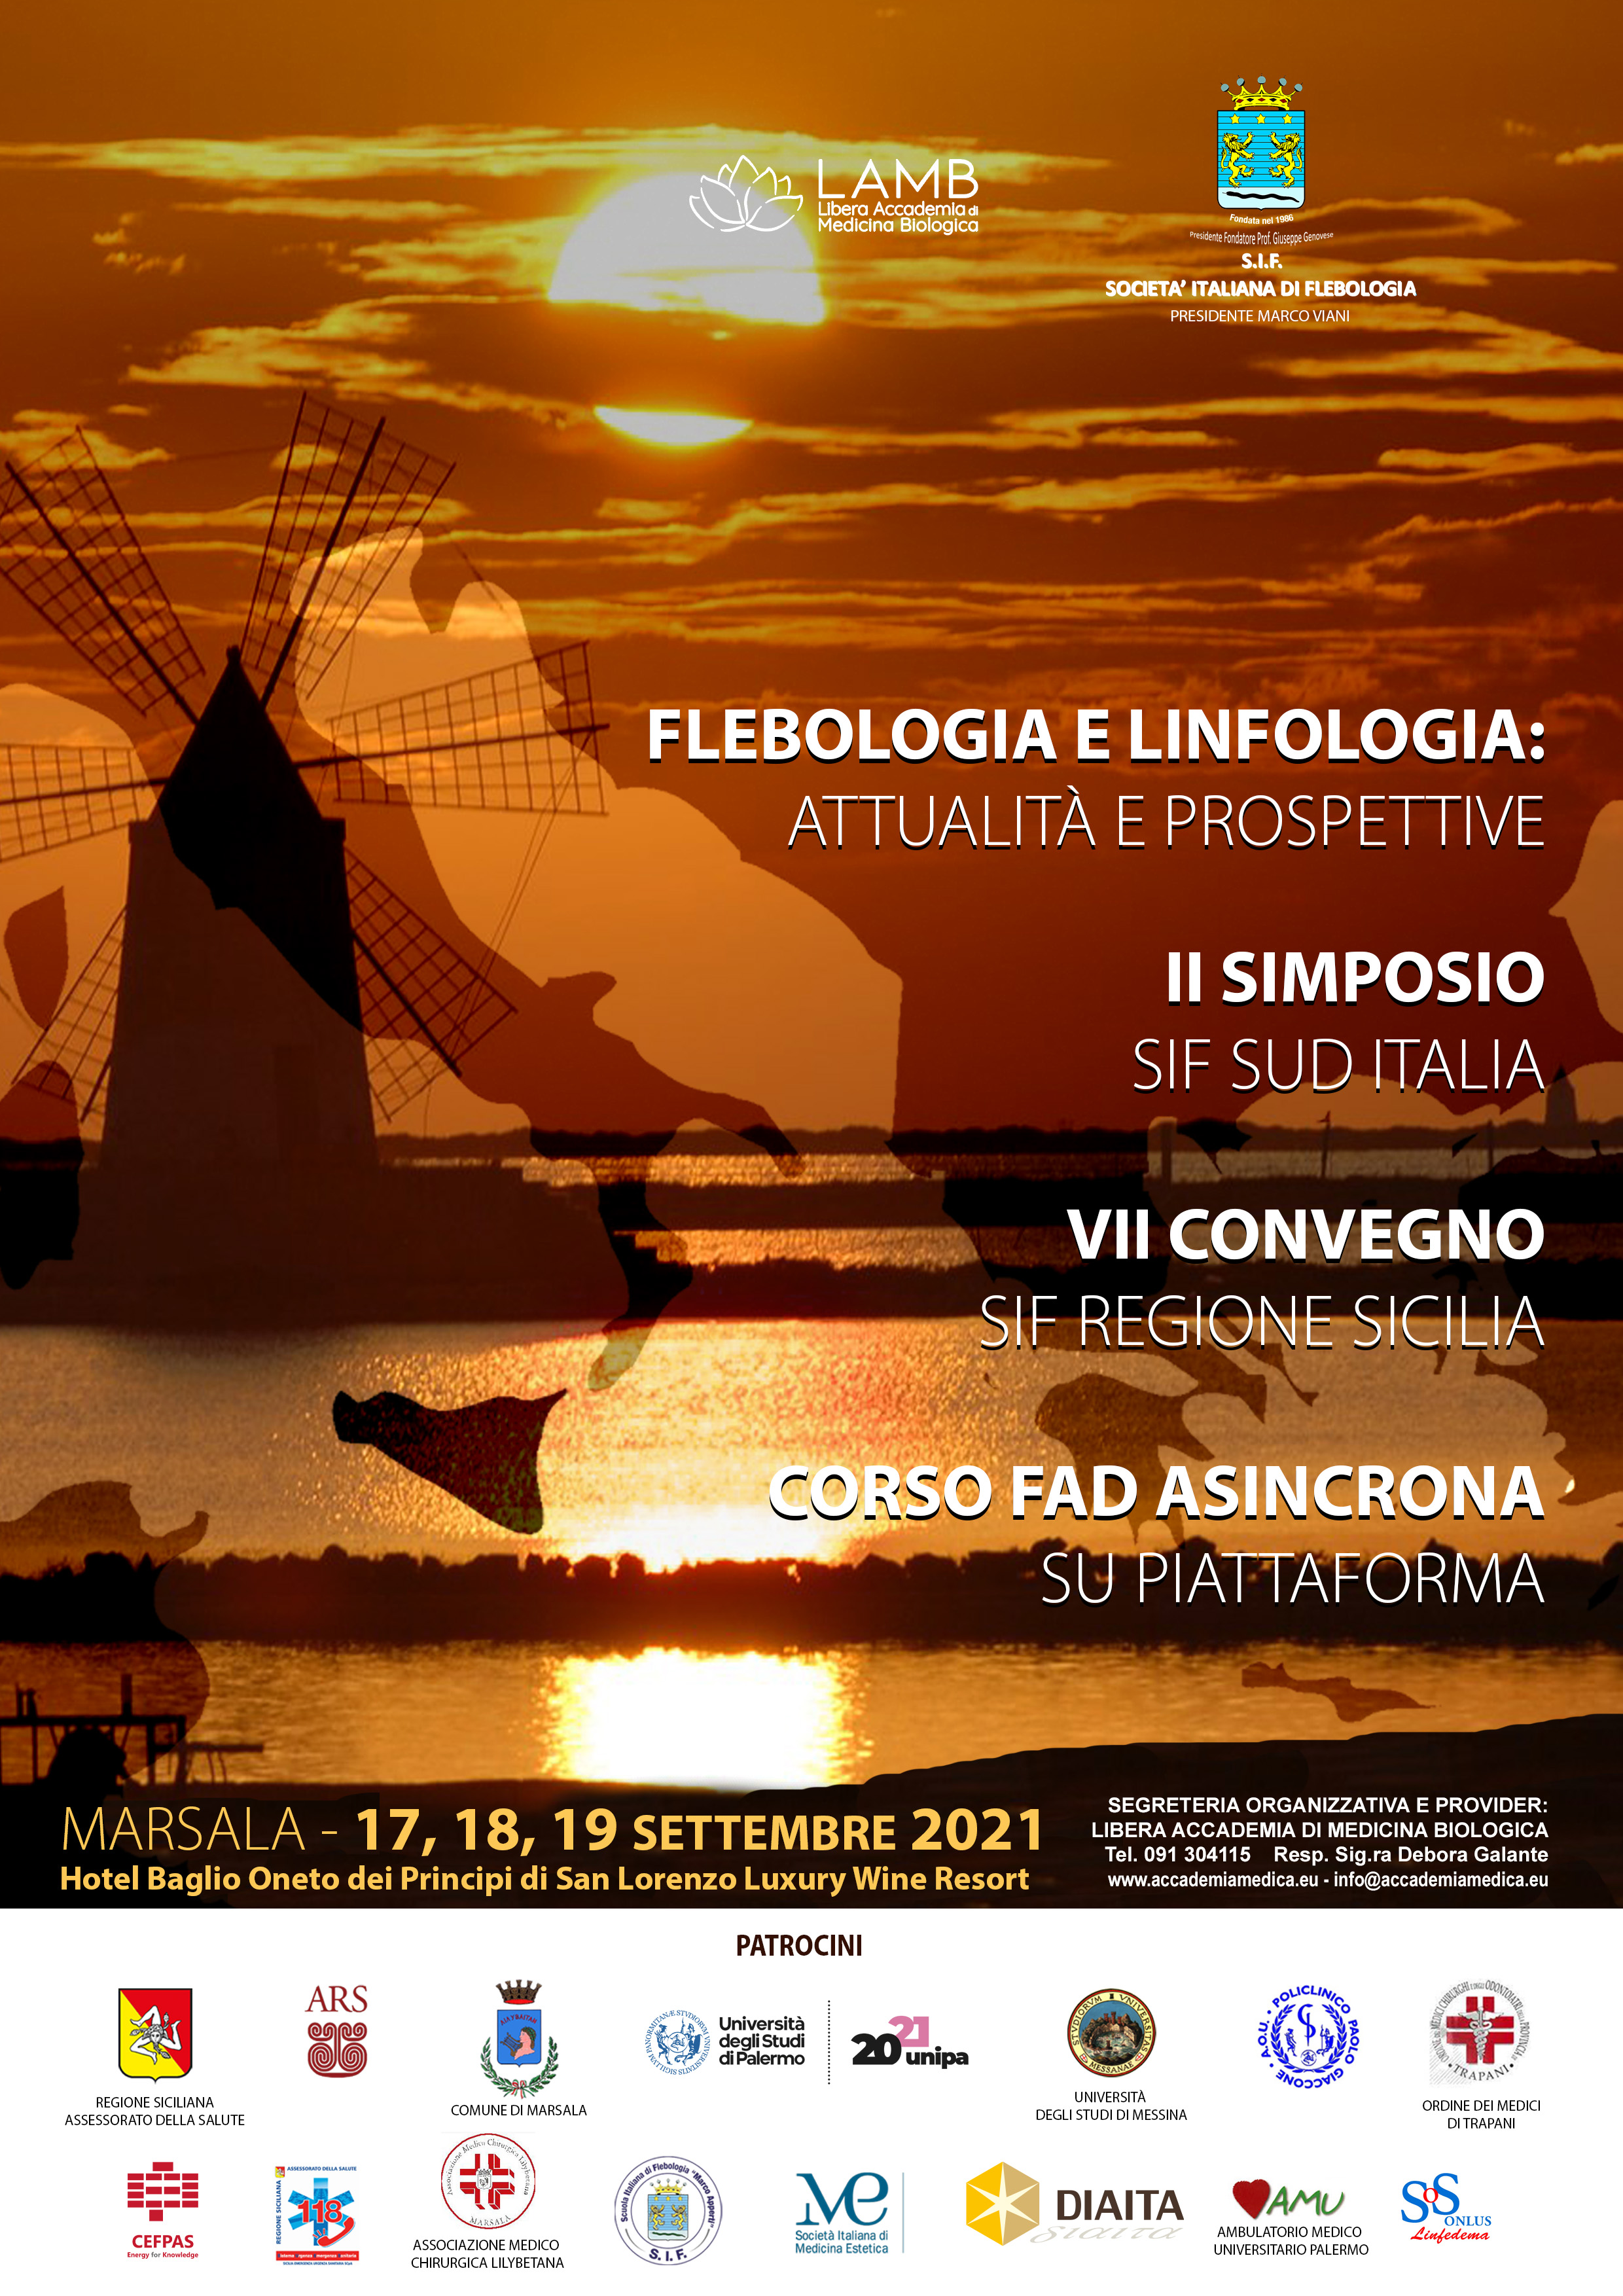 Course Image 2 SIMPOSIO SIF SUD ITALIA-7 CONVEGNO SIF REGIONALE-FLEBOLOGIA E LINFOLOGIA:ATTUALITÀ E PROSPETTIVE